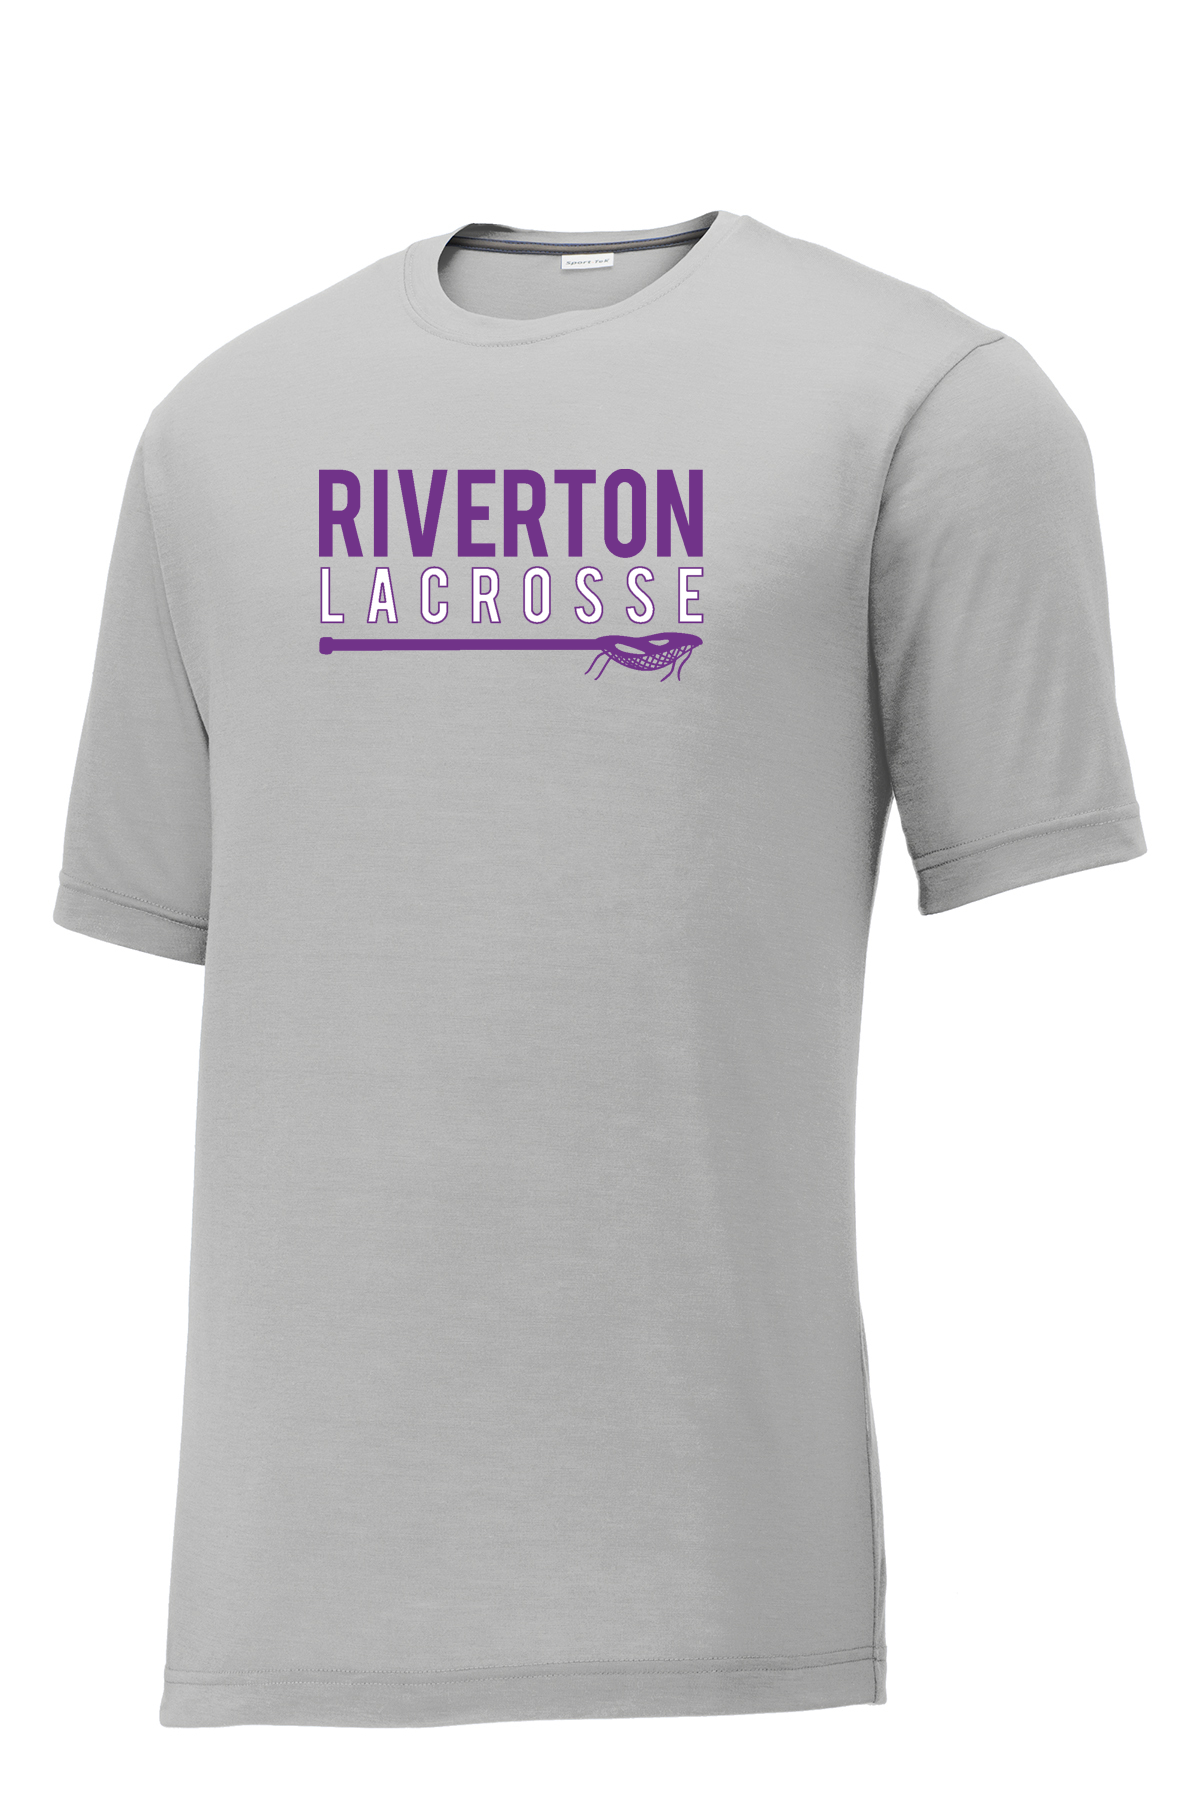 Riverton Lacrosse CottonTouch Performance T-Shirt